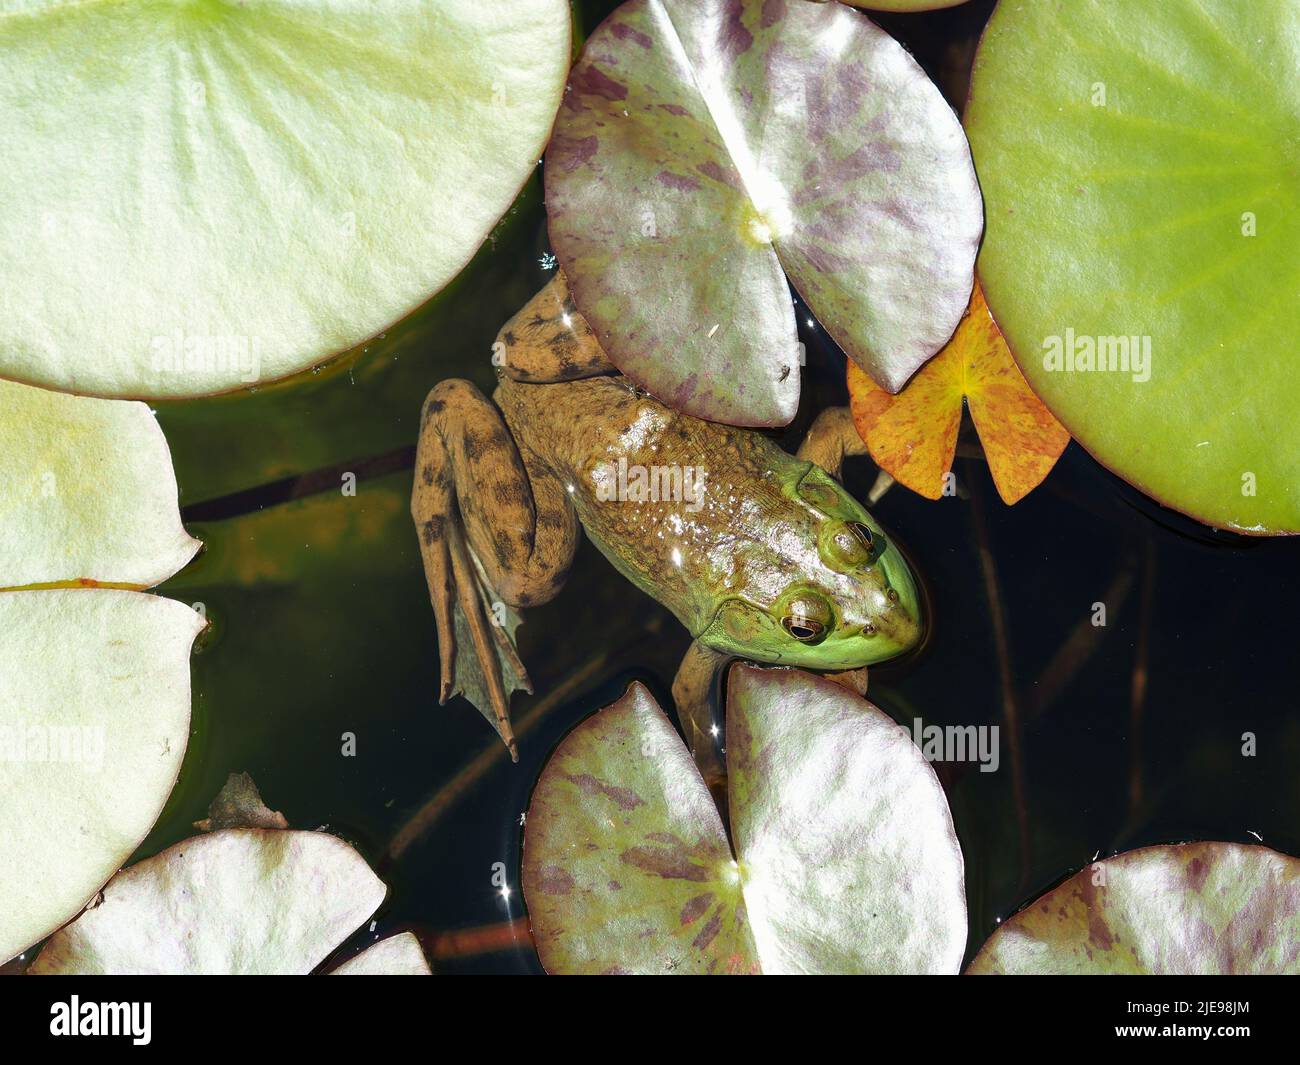 Una rana toro bien camuflada (Lithobates catesbeianus) entre las plataformas de lirios de un estanque de jardín en Ottawa, Ontario, Canadá. Foto de stock